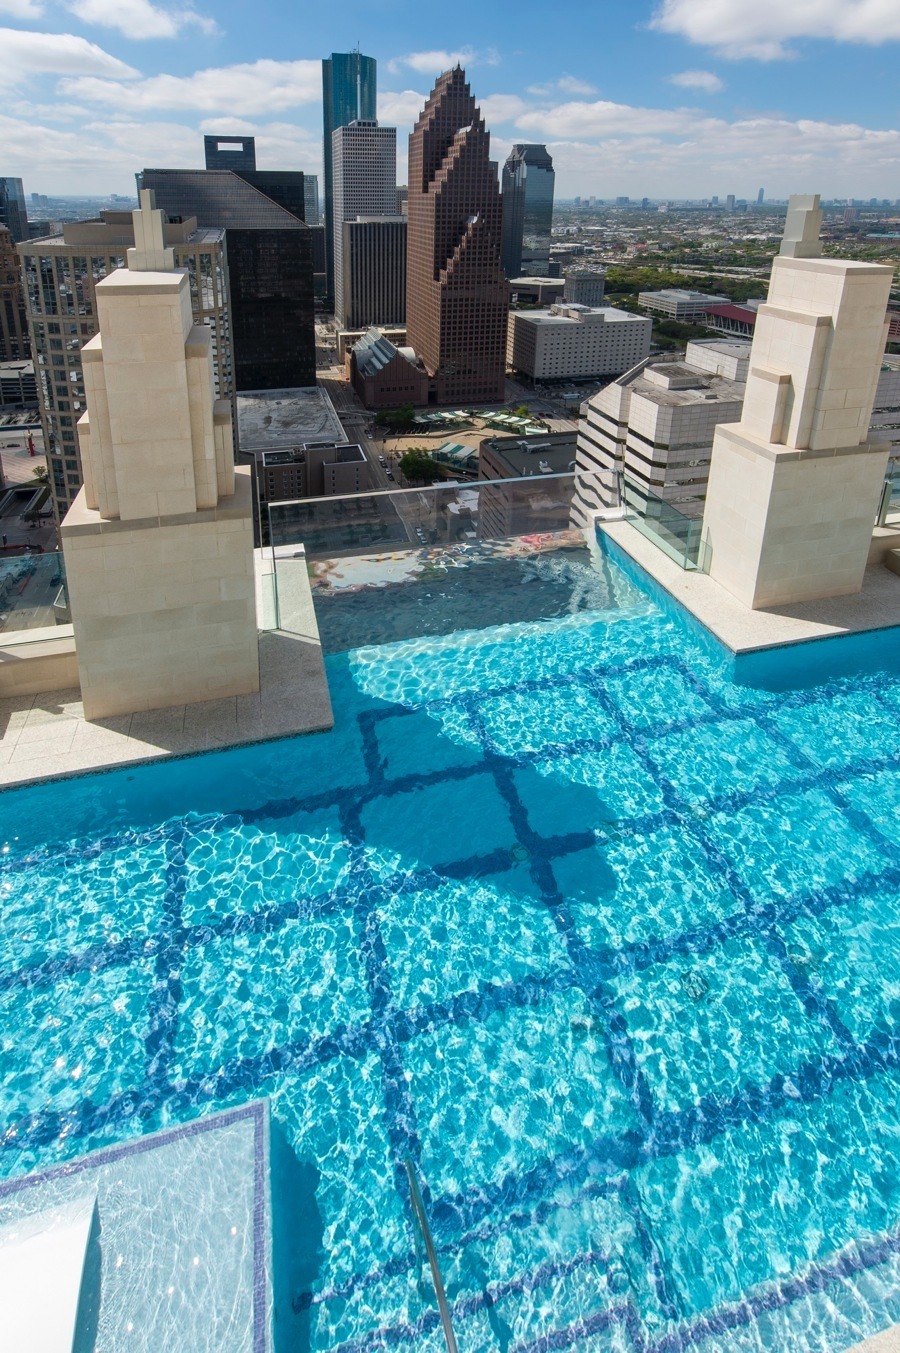 imagen 4 de Una casa con piscina infinita y suelo de cristal sobre el cielo de Houston.